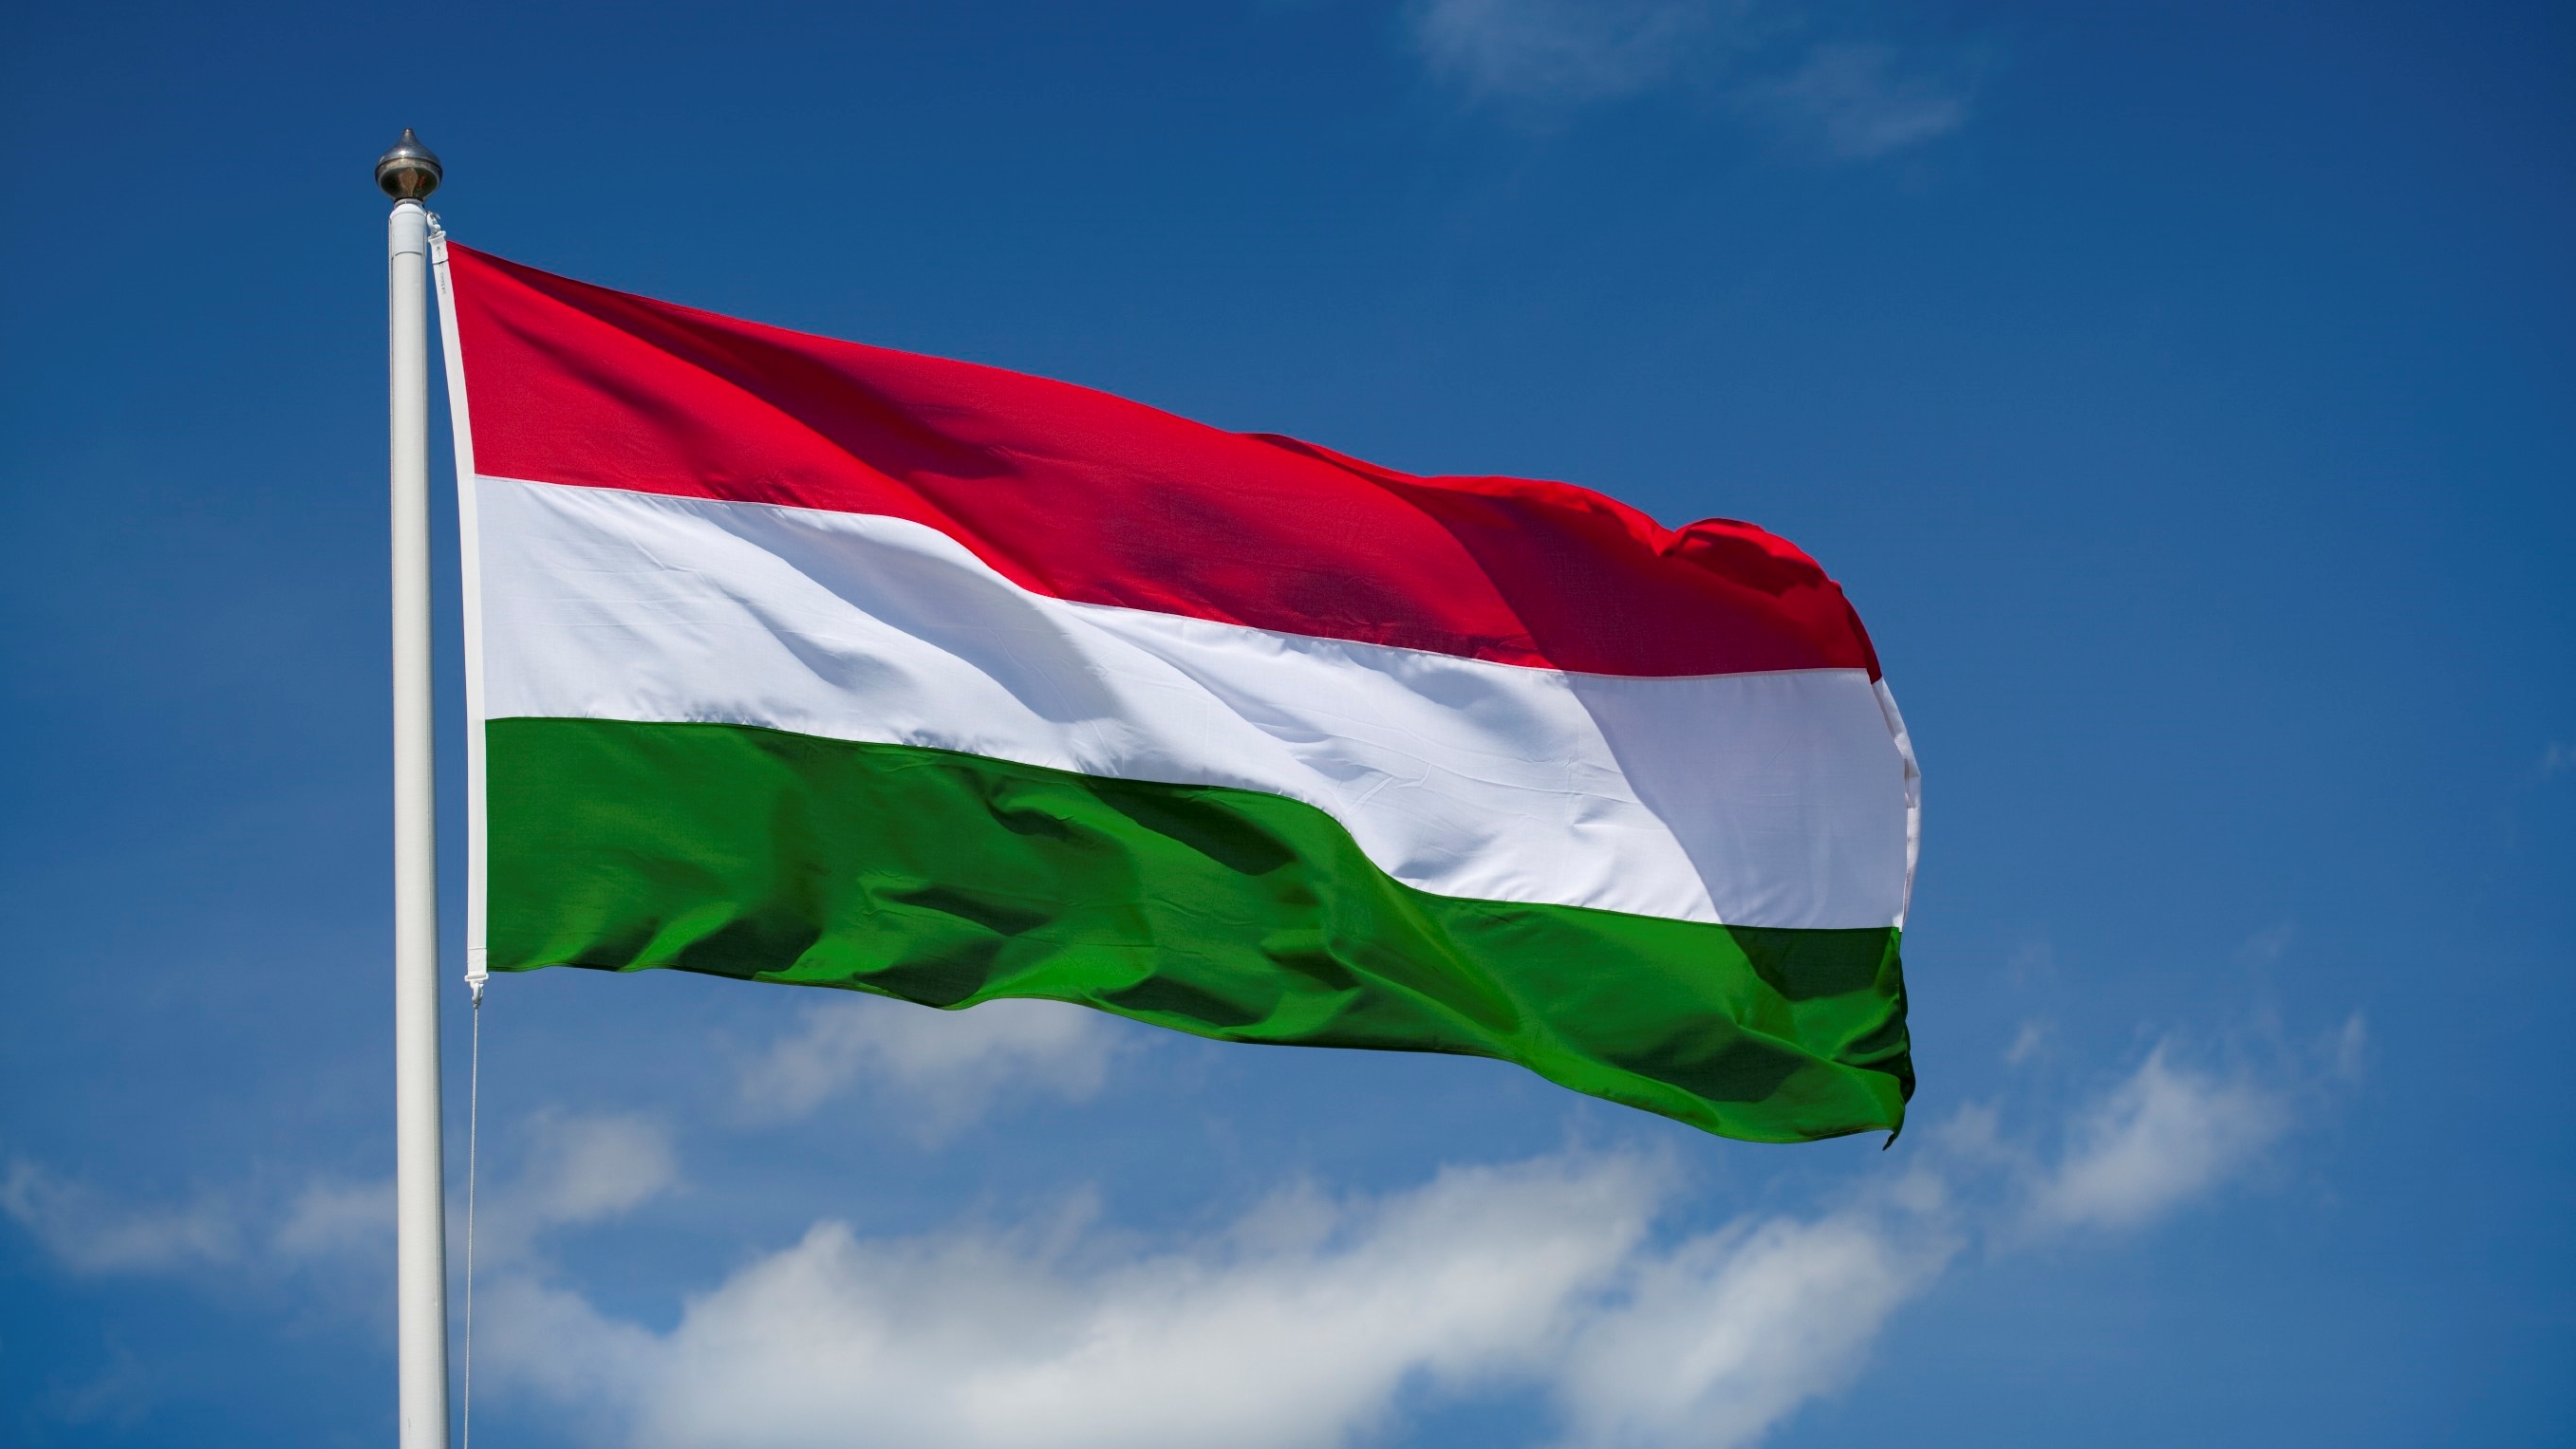 Macaristan: Yaklaşan Dünya Atletizm Şampiyonası ve Ulusal Tatil Sırasında Planlanan Trafik Kısıtlamaları